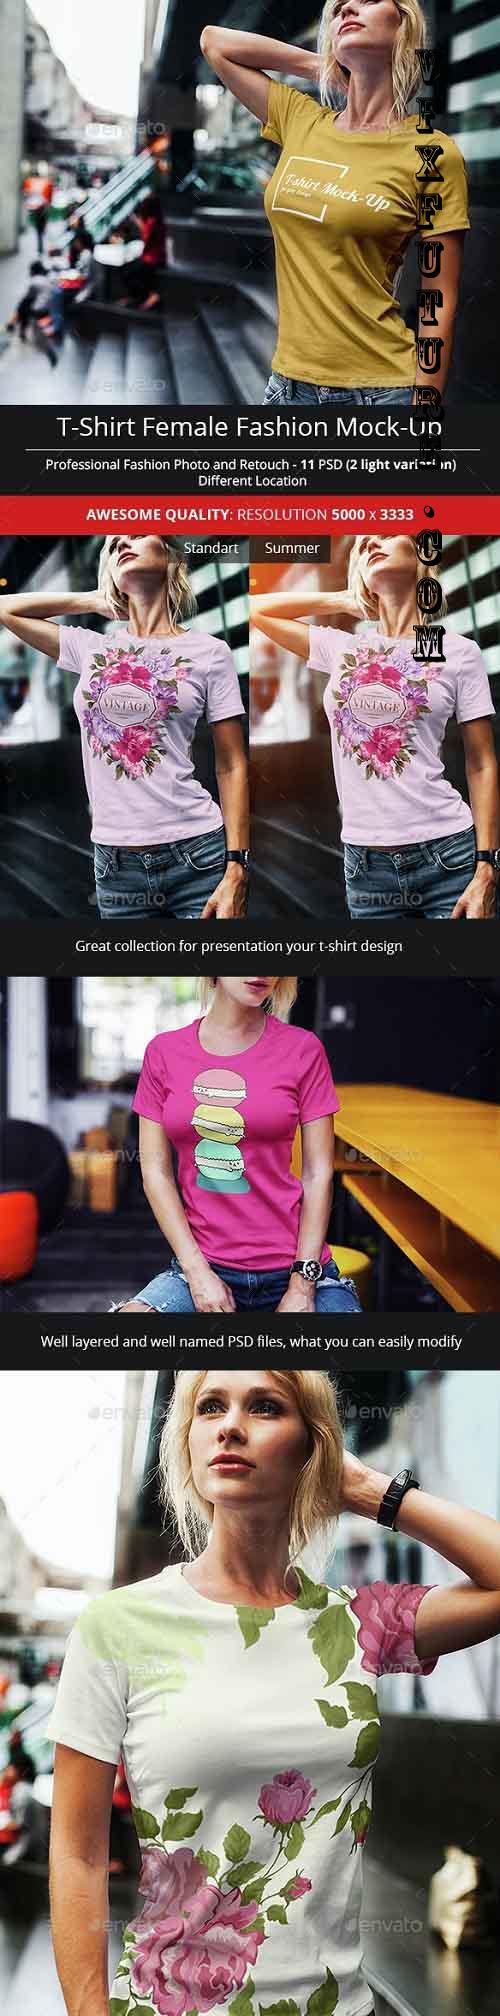 Female T-Shirt Fashion Mock-Up - 14707045